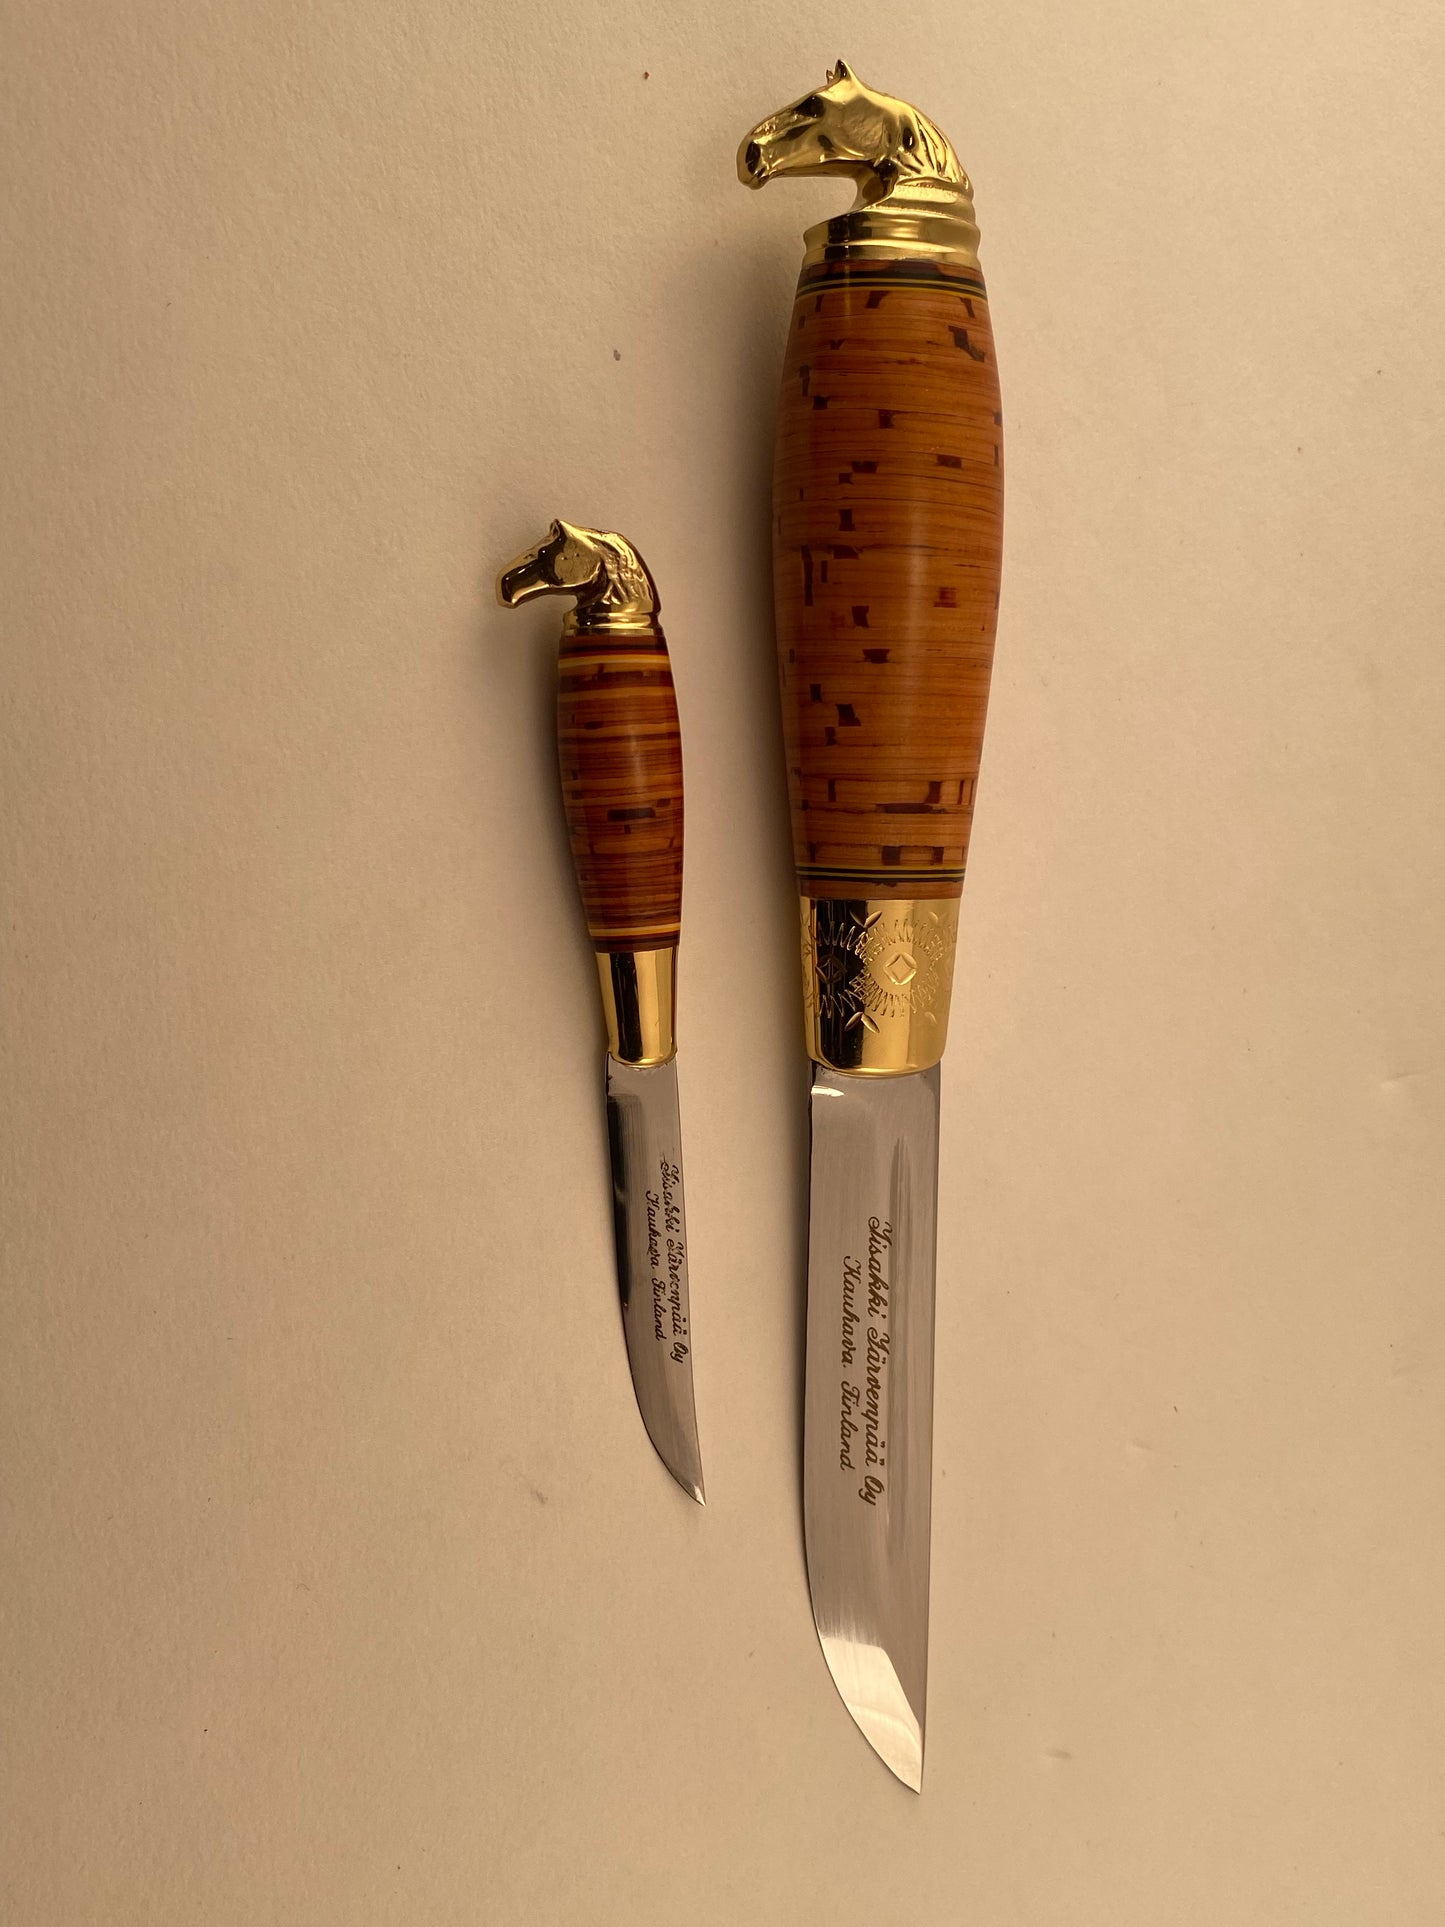 Järvenpää Outdoor Bushcraft Puukko Combo knife set